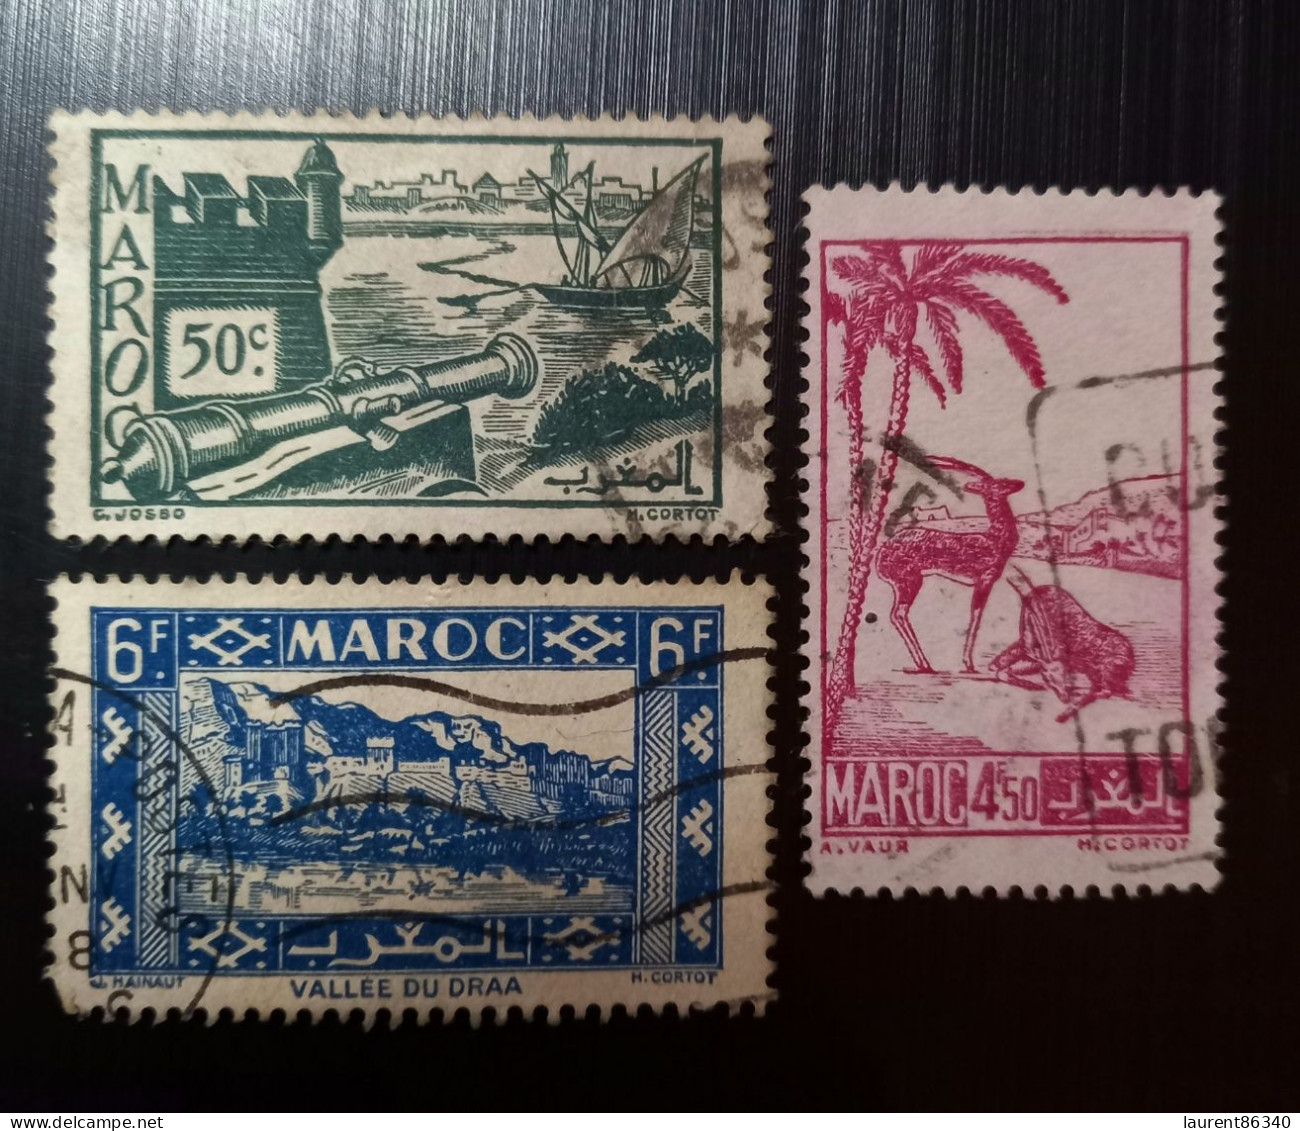 Maroc Poste Française 1945 Local Motives  Modèle: Cortot Gravure: C. Josso - Gebraucht